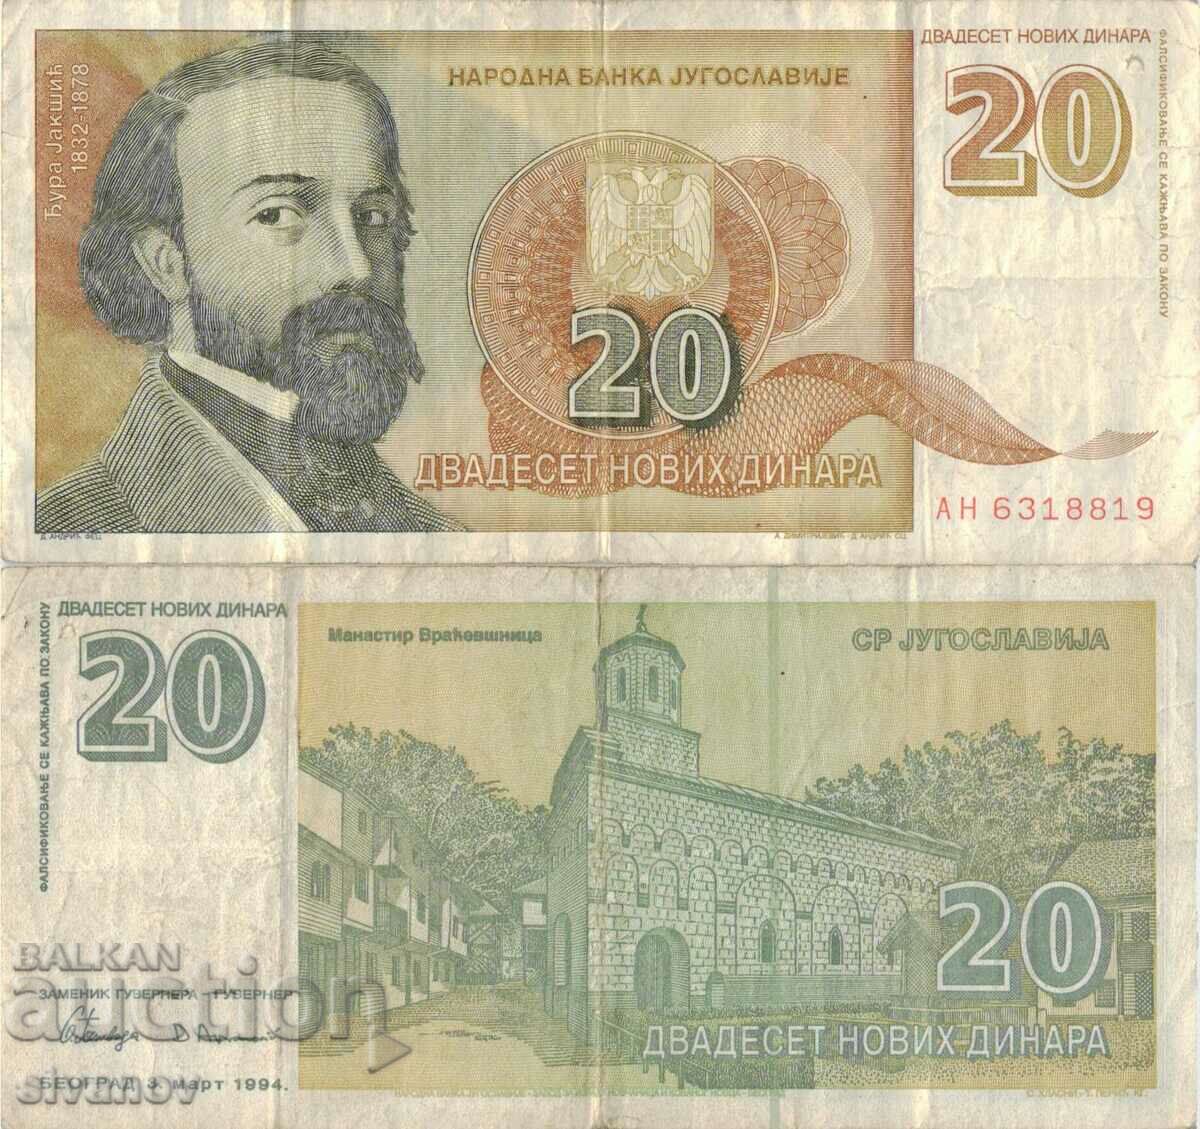 Yugoslavia 20 dinars 1994 #5025